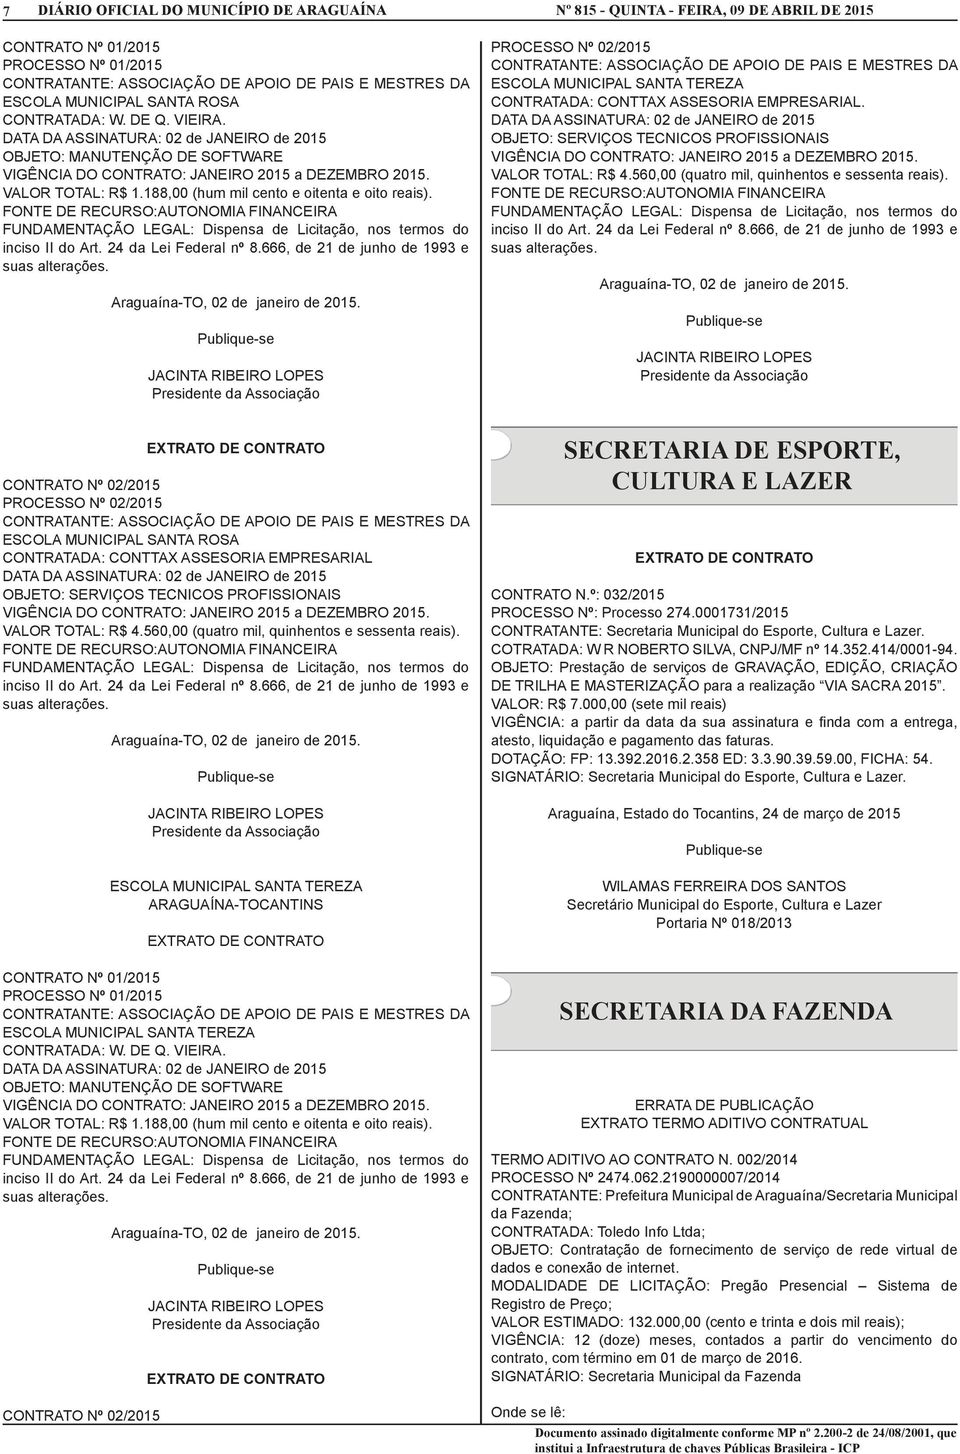 0001731/2015 CONTRATANTE: Secretaria Municipal do Esporte, Cultura e Lazer. COTRATADA: W R NOBERTO SILVA, CNPJ/MF nº 14.352.414/0001-94.